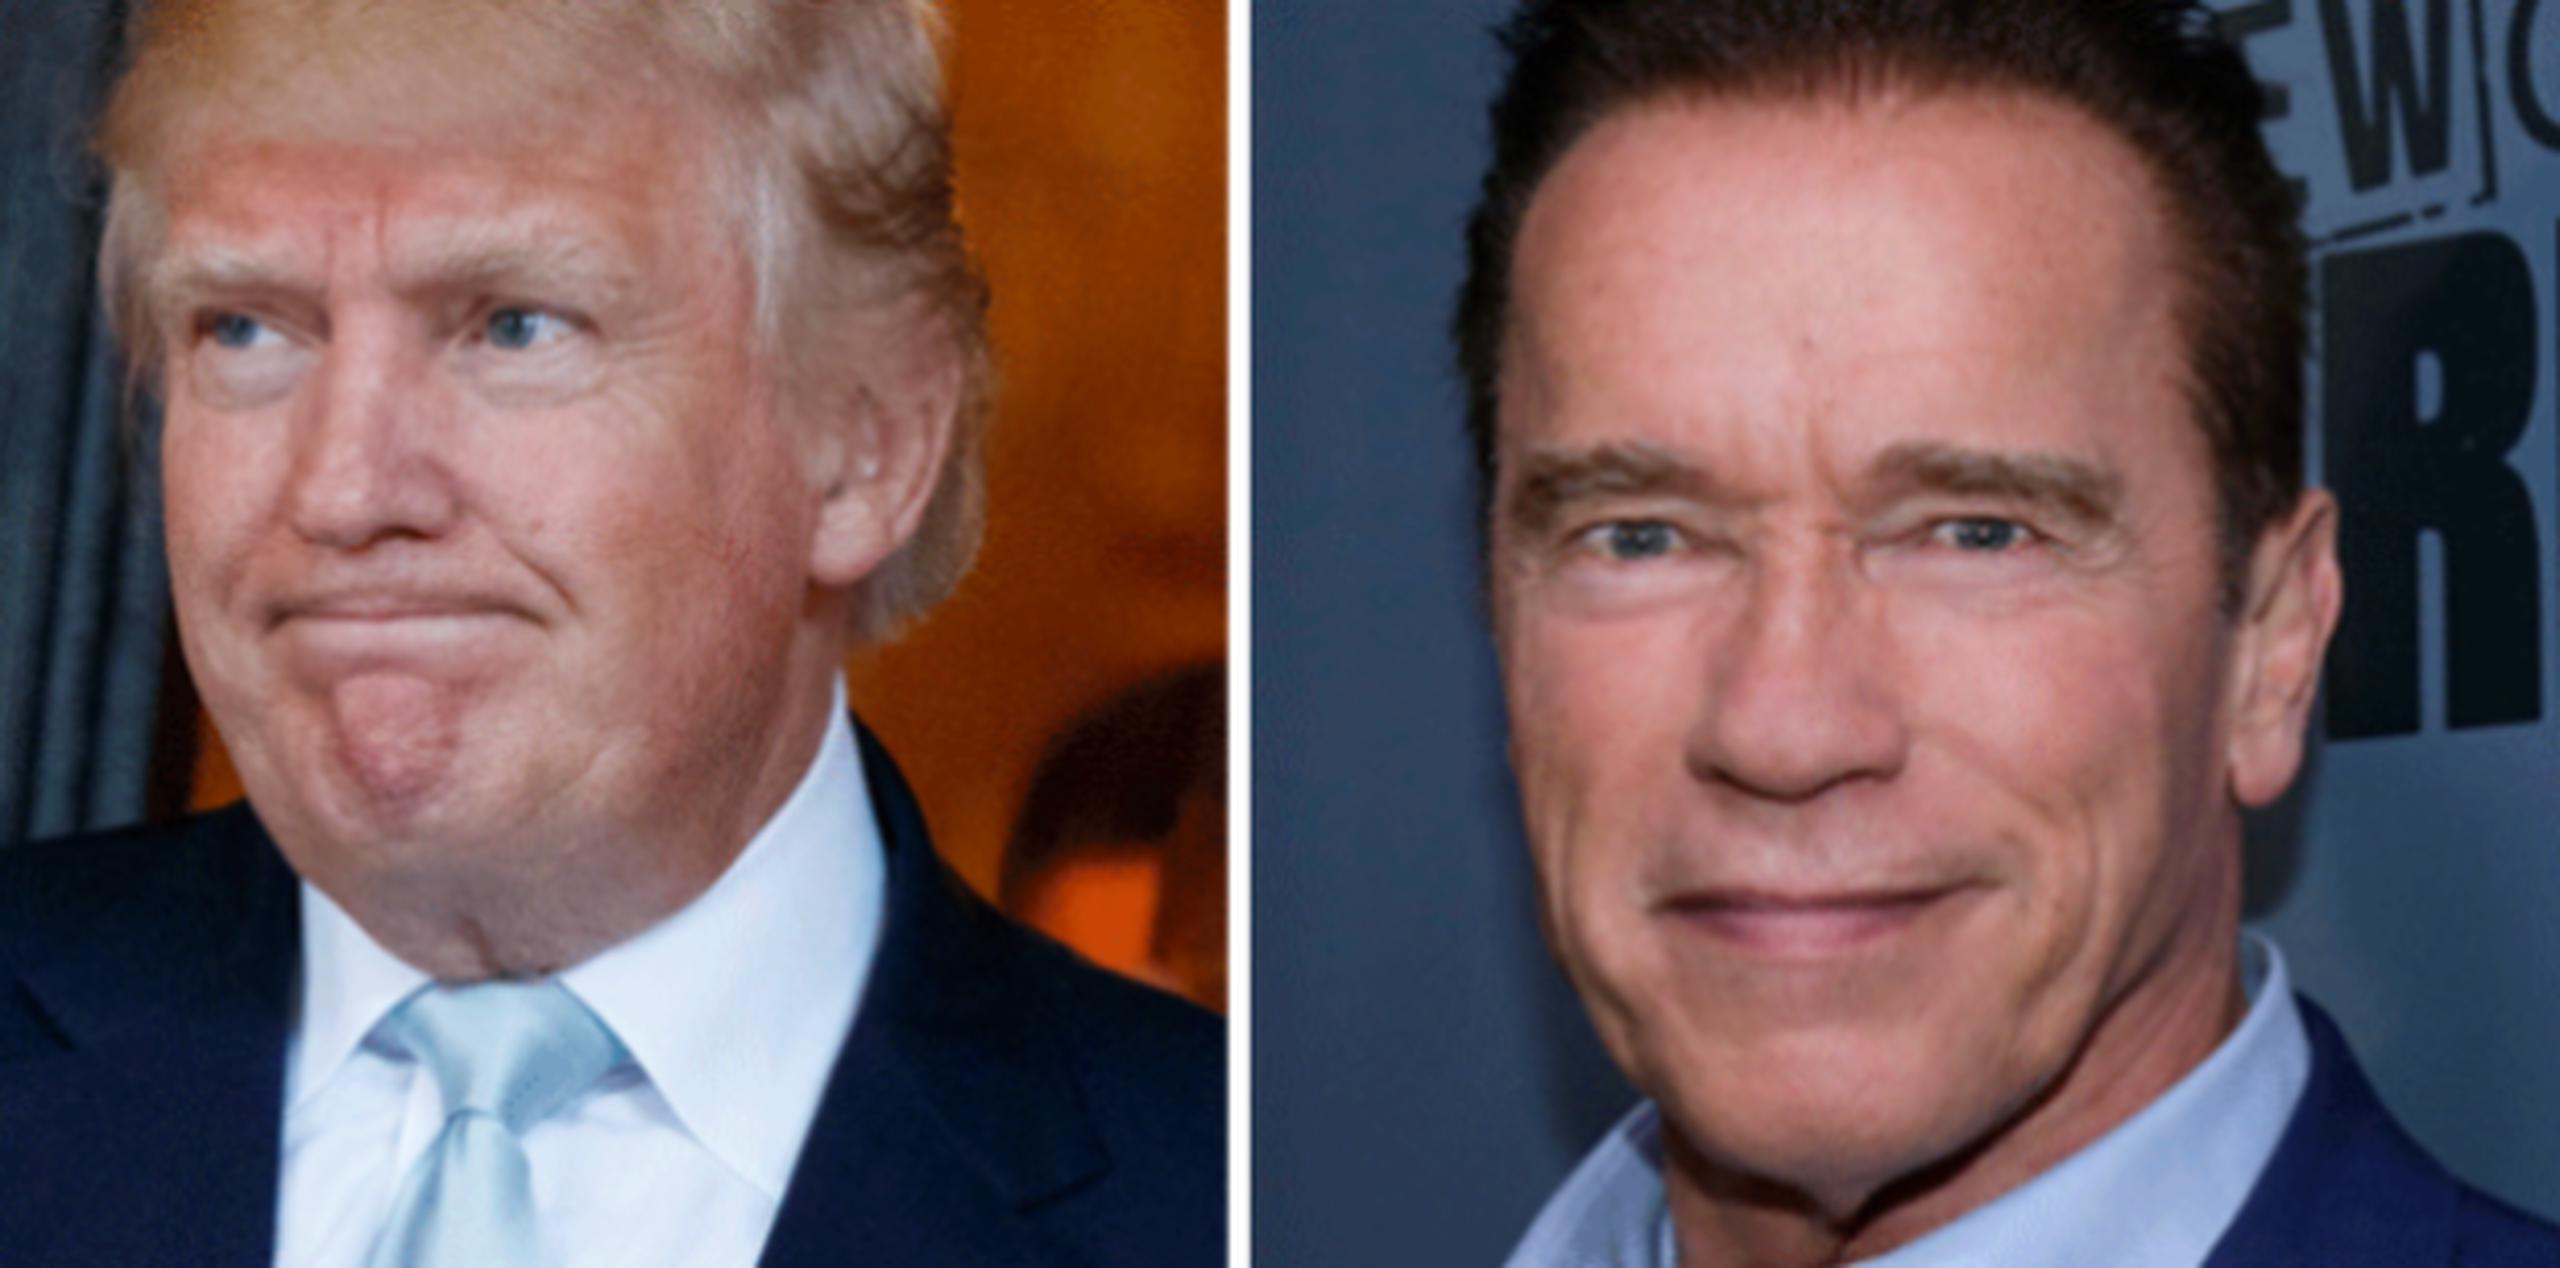 El presidente electo, Donald Trump, abandonó hoy brevemente sus comentarios políticos desde su cuenta de Twitter para atacar al actor Arnold Schwarzenegger. (Archivo)